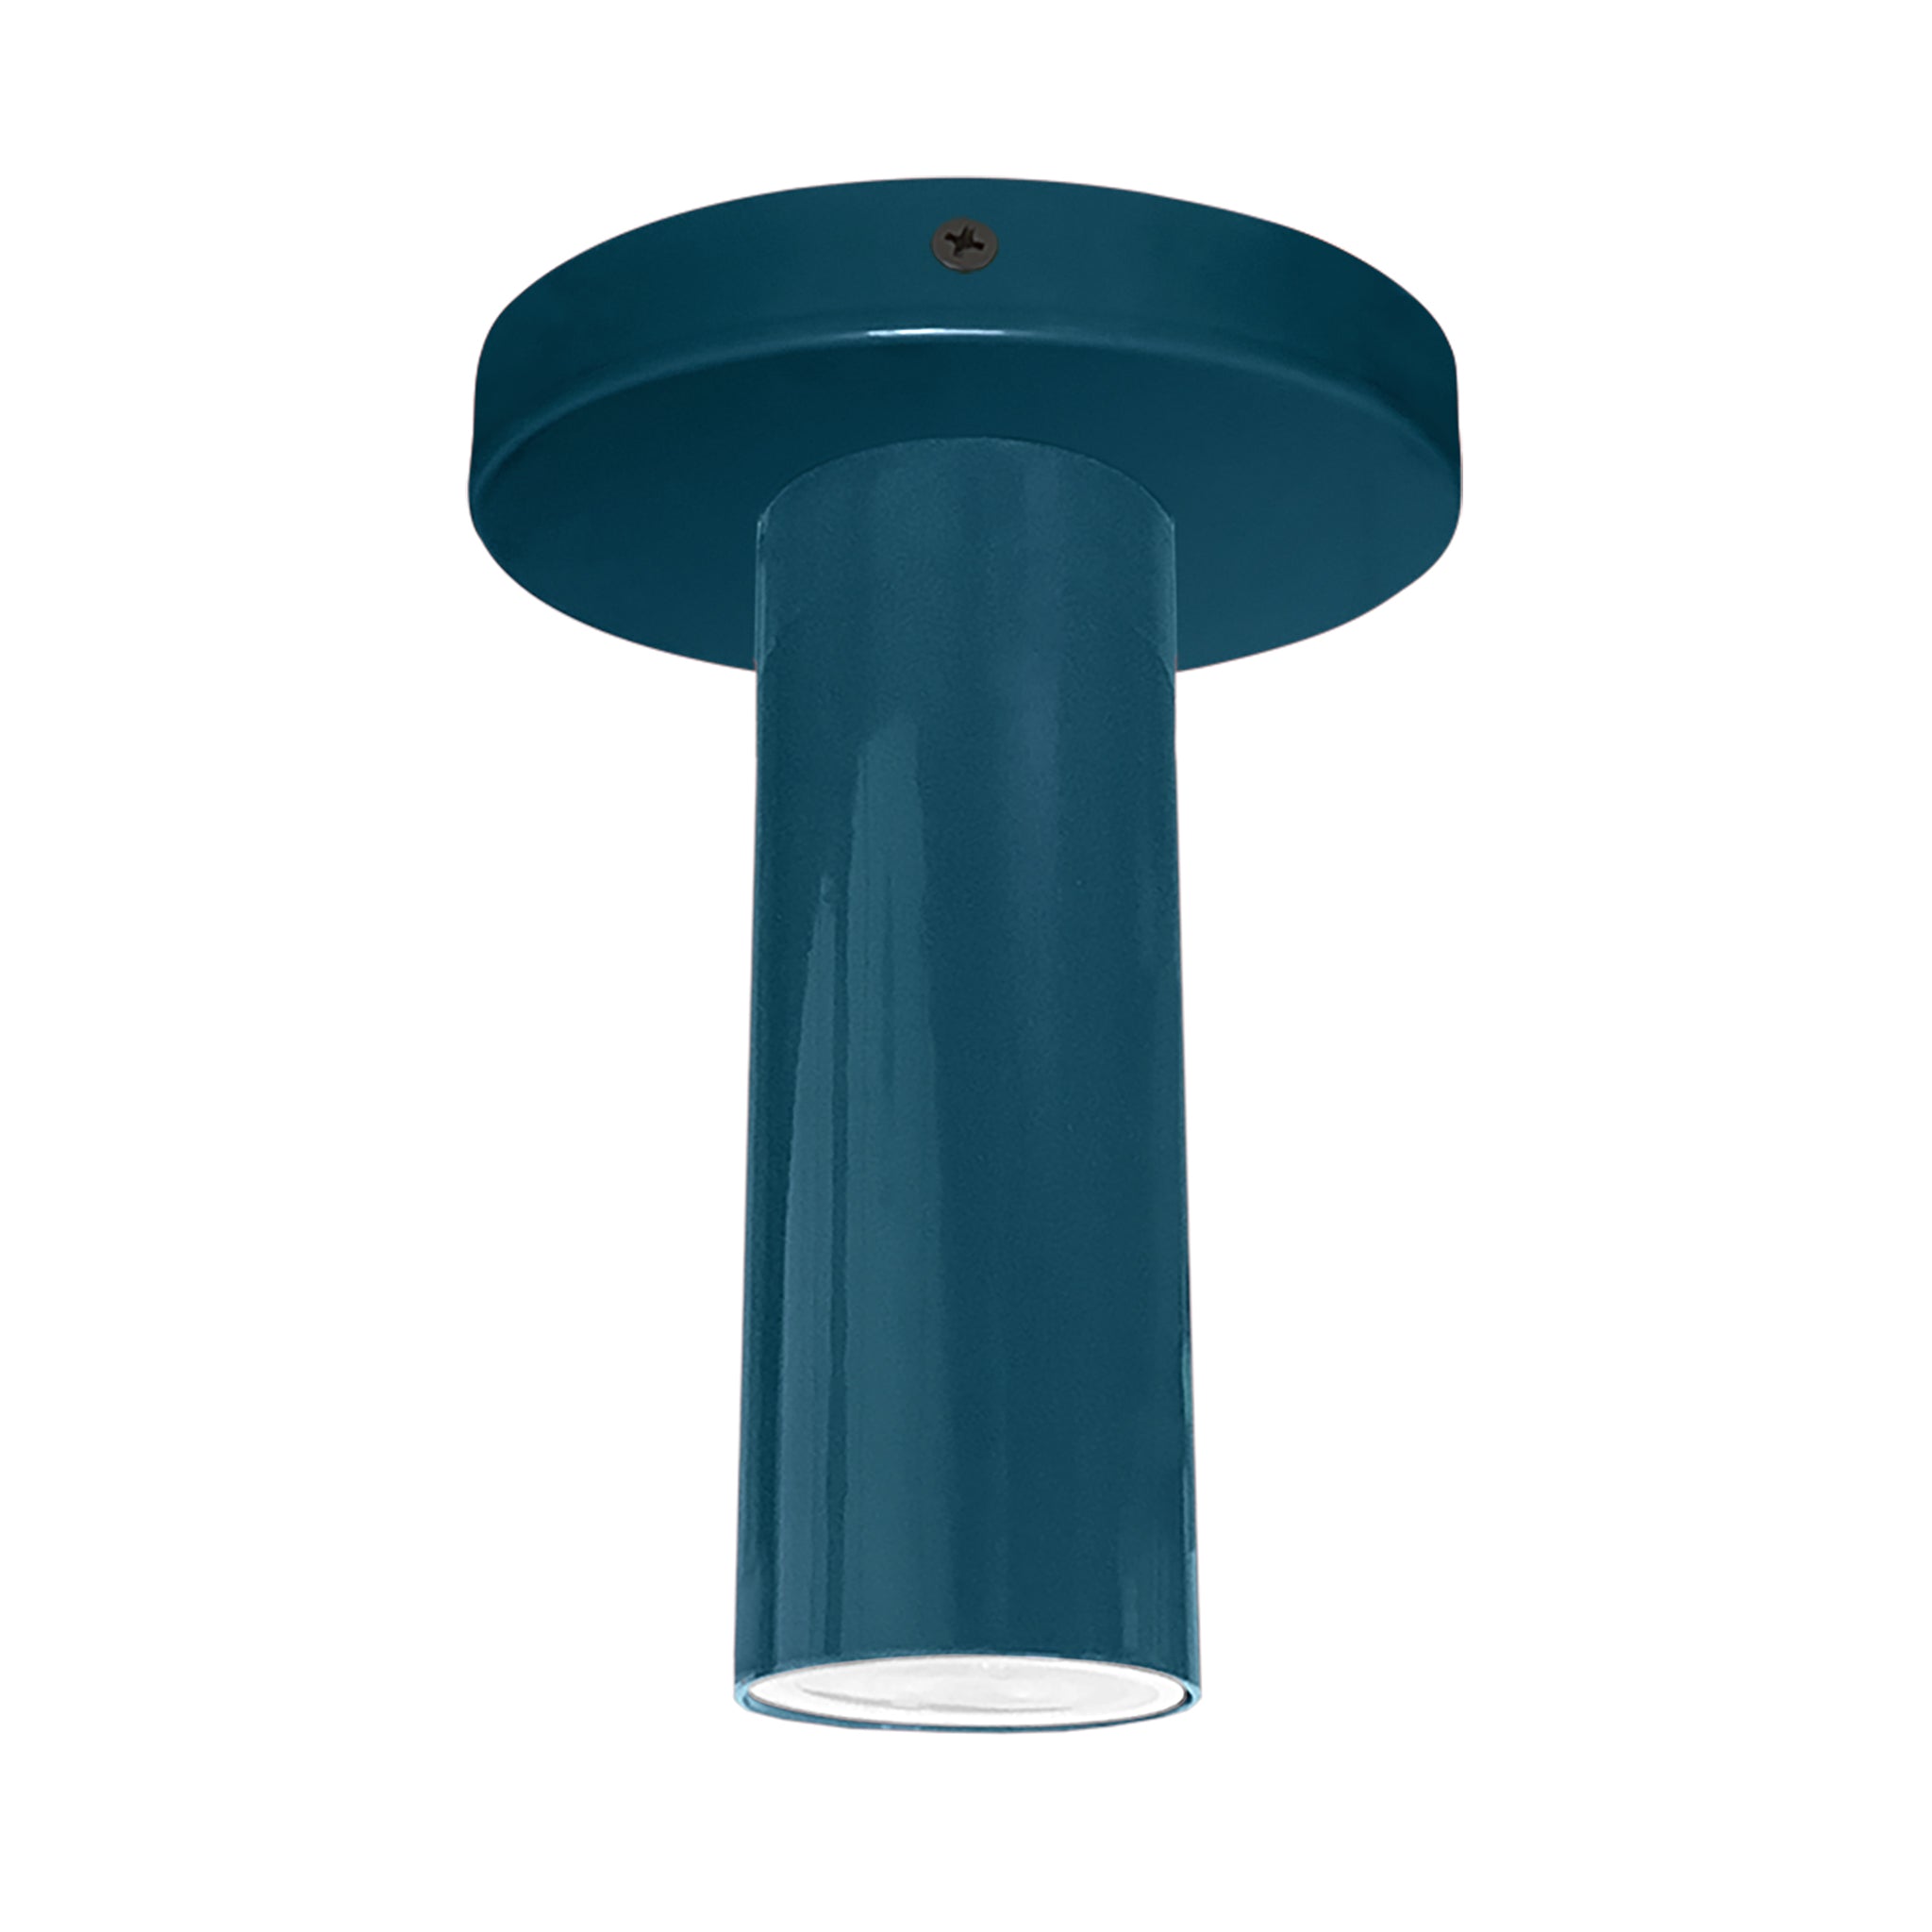 Black and slate blue color Reader flush mount Dutton Brown lighting